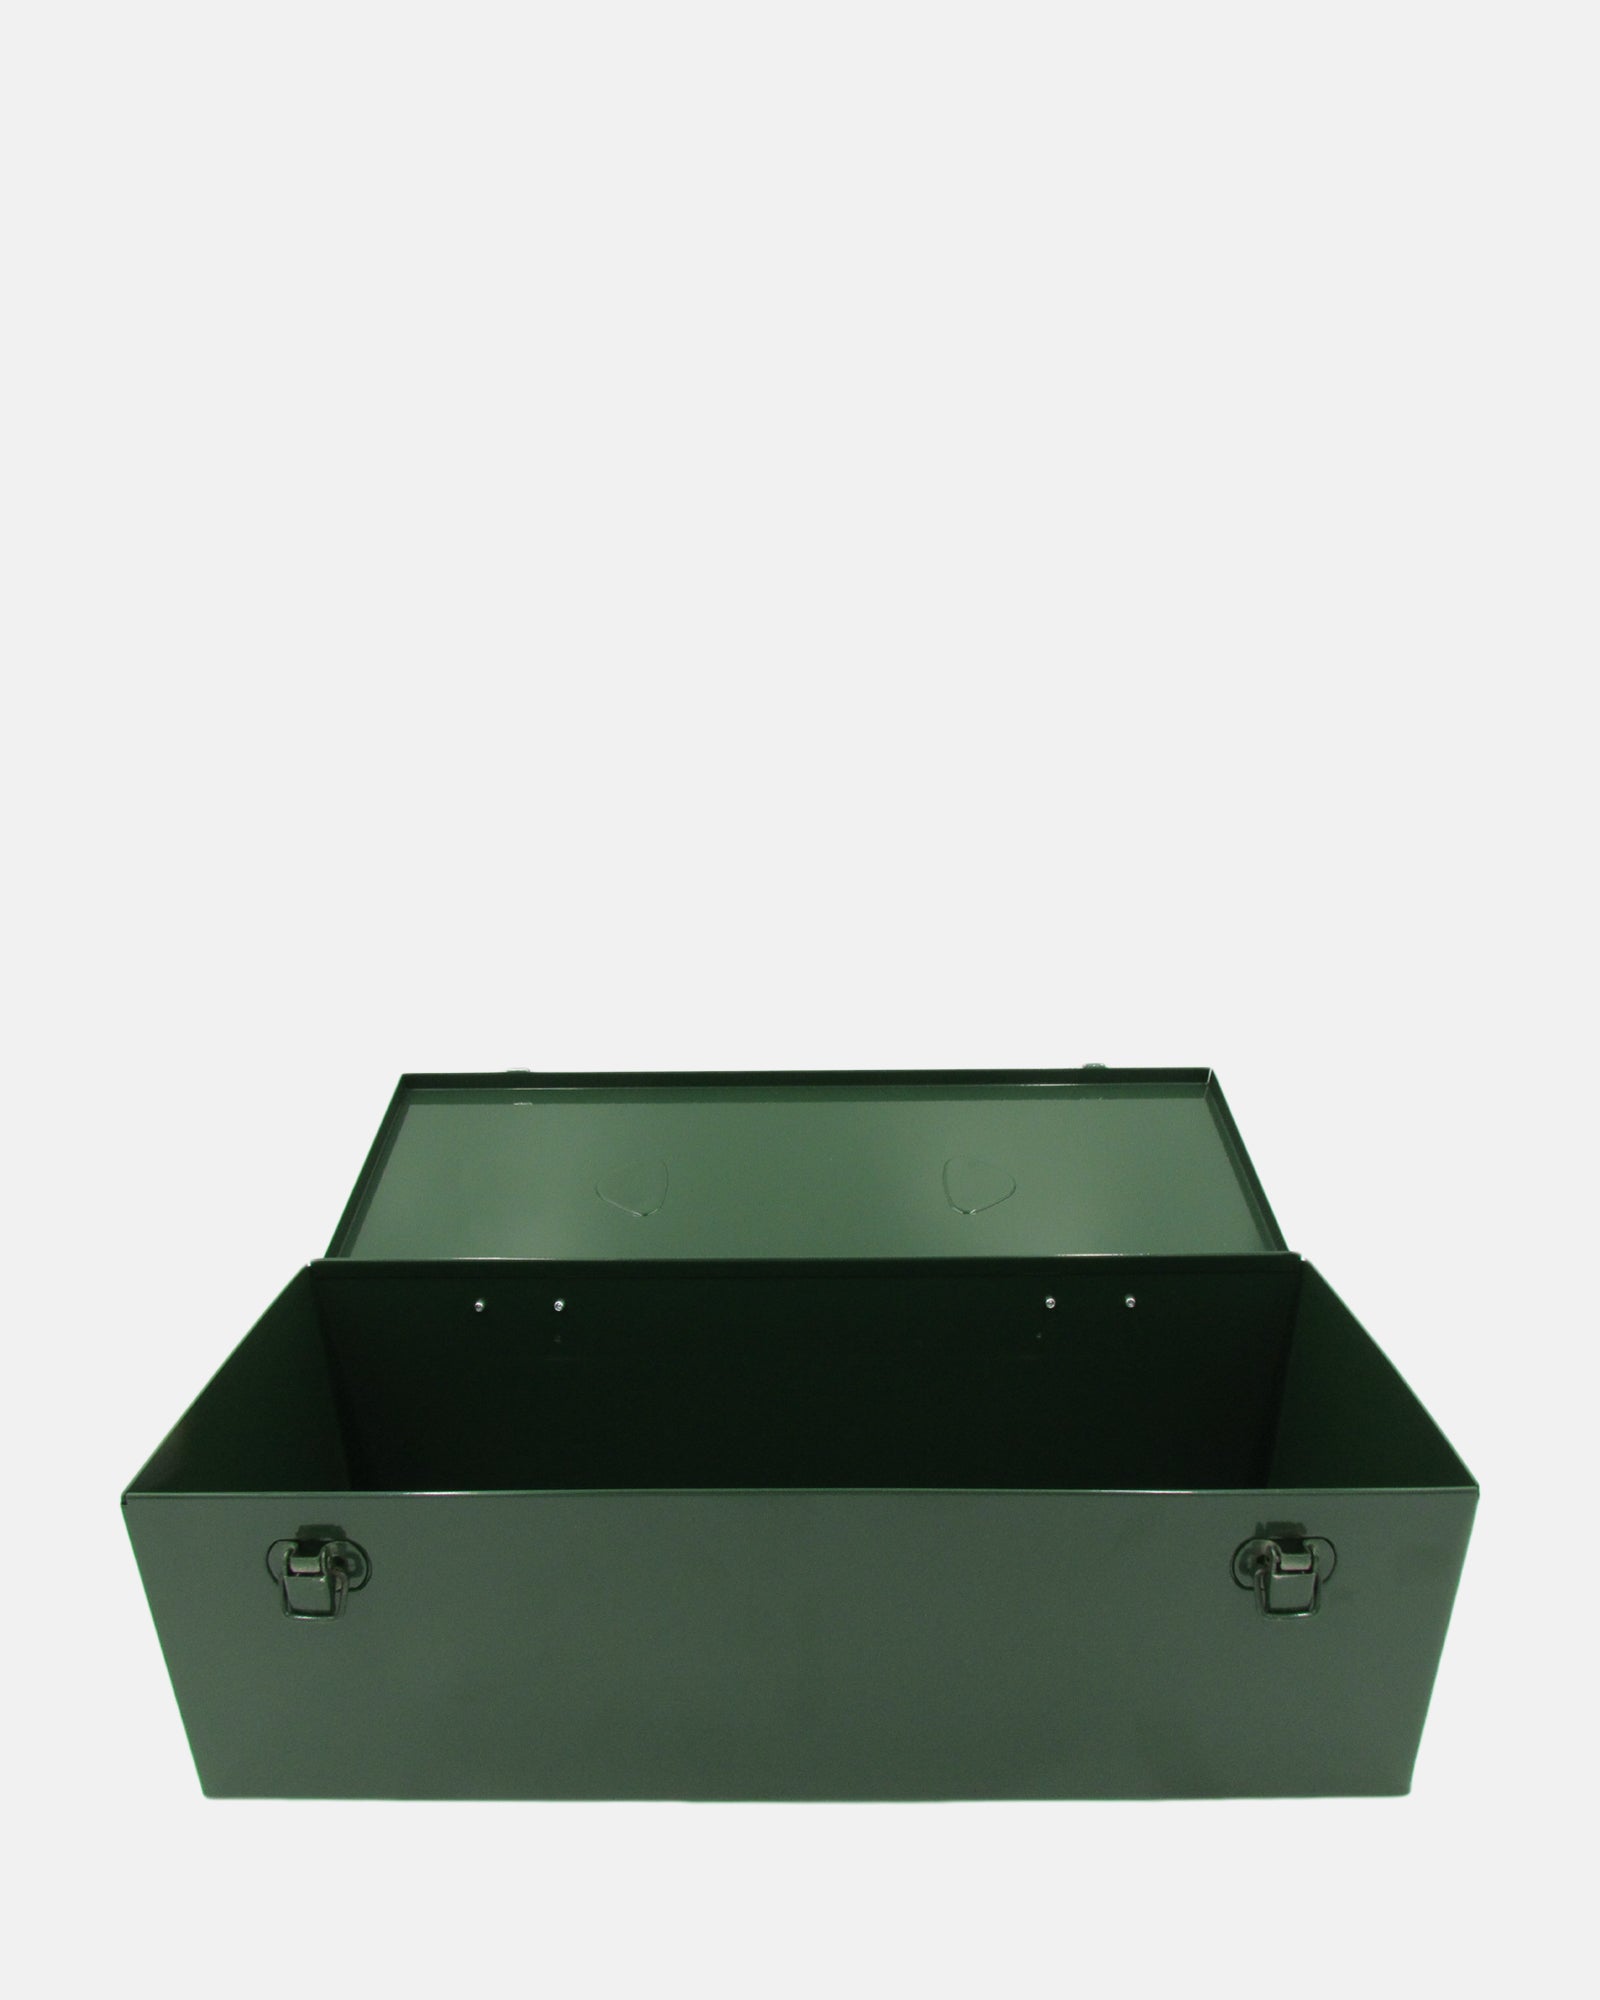 Steel Tool Box with Metal Handle - Green - BRIT LOCKER